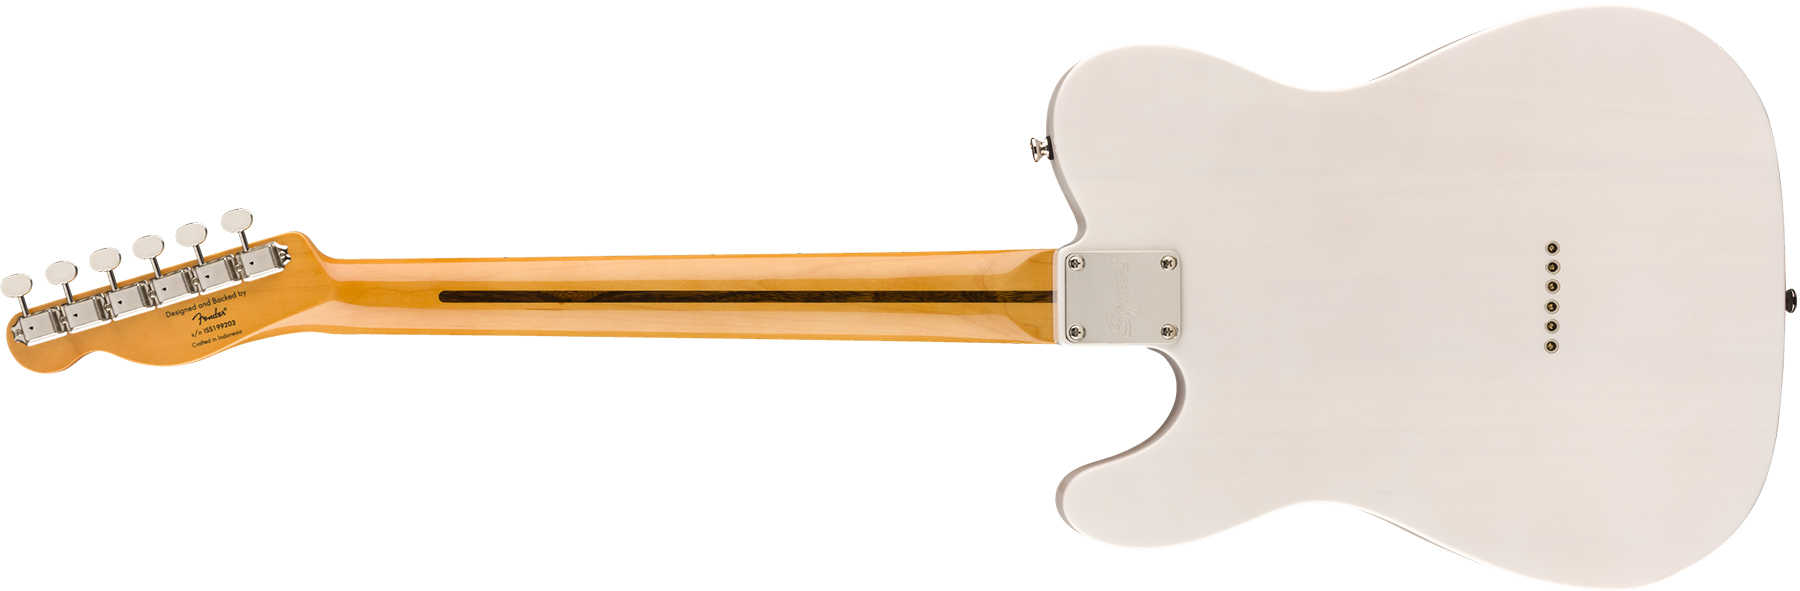 Squier Tele '50s Classic Vibe 2019 Mn 2019 - White Blonde - Televorm elektrische gitaar - Variation 1